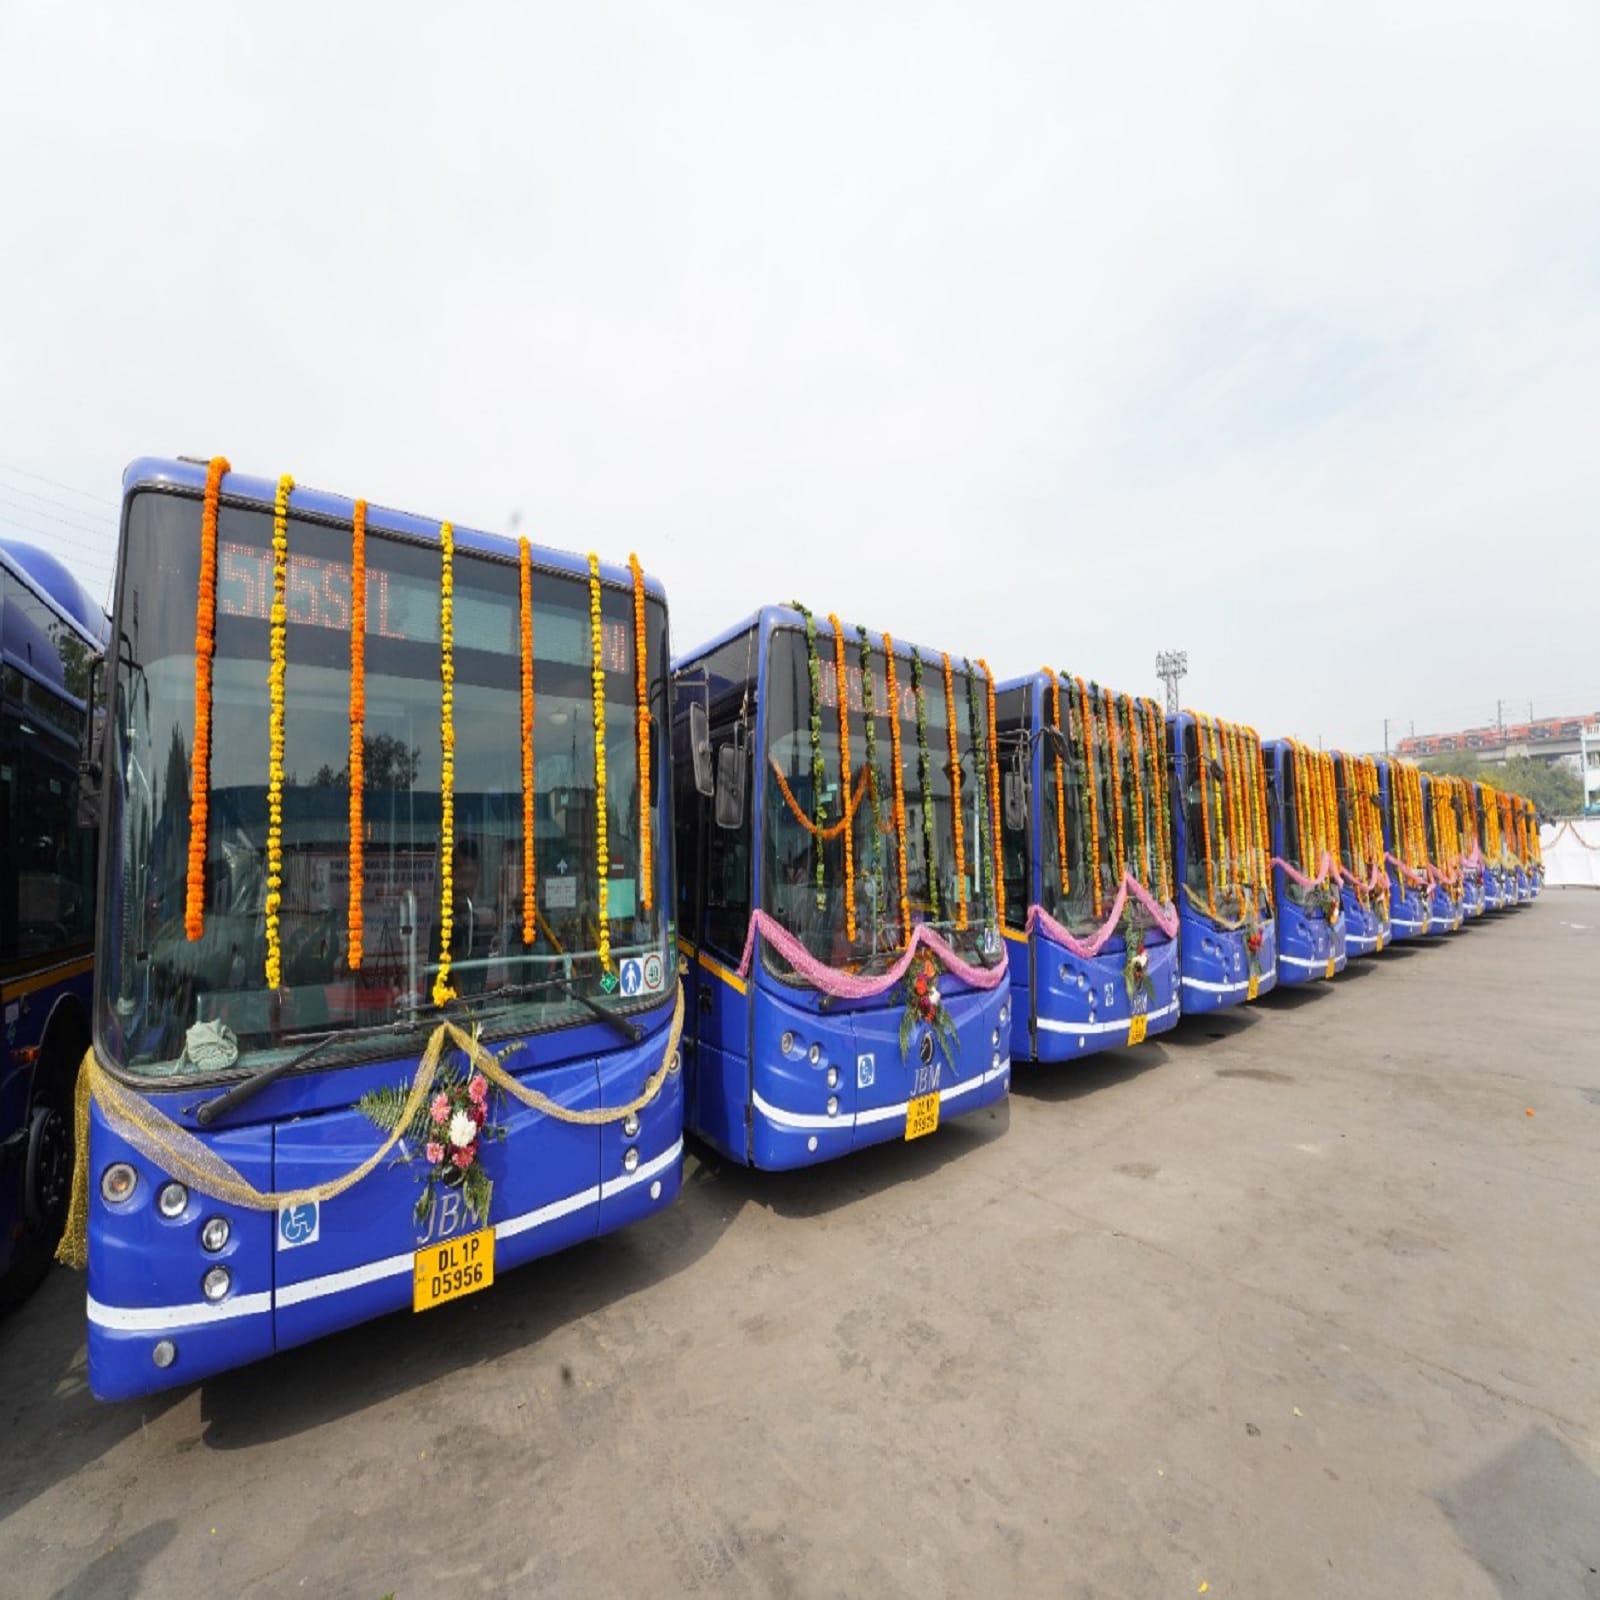 DTC Buses, Cluster bus, Delhi Government, Arvind Kejriwal, Kailash Gahlot, DTC, Cluster Buses in delhi, E-Bus, Electric Bus, Kejriwal Government, Delhi Latest News, डीटीसी बसें, लो-फ्लोर डीटीसी बसें, दिल्ली न्यूज, 80 एसी लो- फ्लोर डीटीसी बसें, दिल्ली की खबरें, दिल्ली सरकार, कैलाश गहलोत, परिवाहन मंत्रालय कैलाश गहलोत, दिल्ली न्यूज, डीटीसी बस, दिल्ली लेटेस्ट न्यूज, अरविंद केजरीवाल